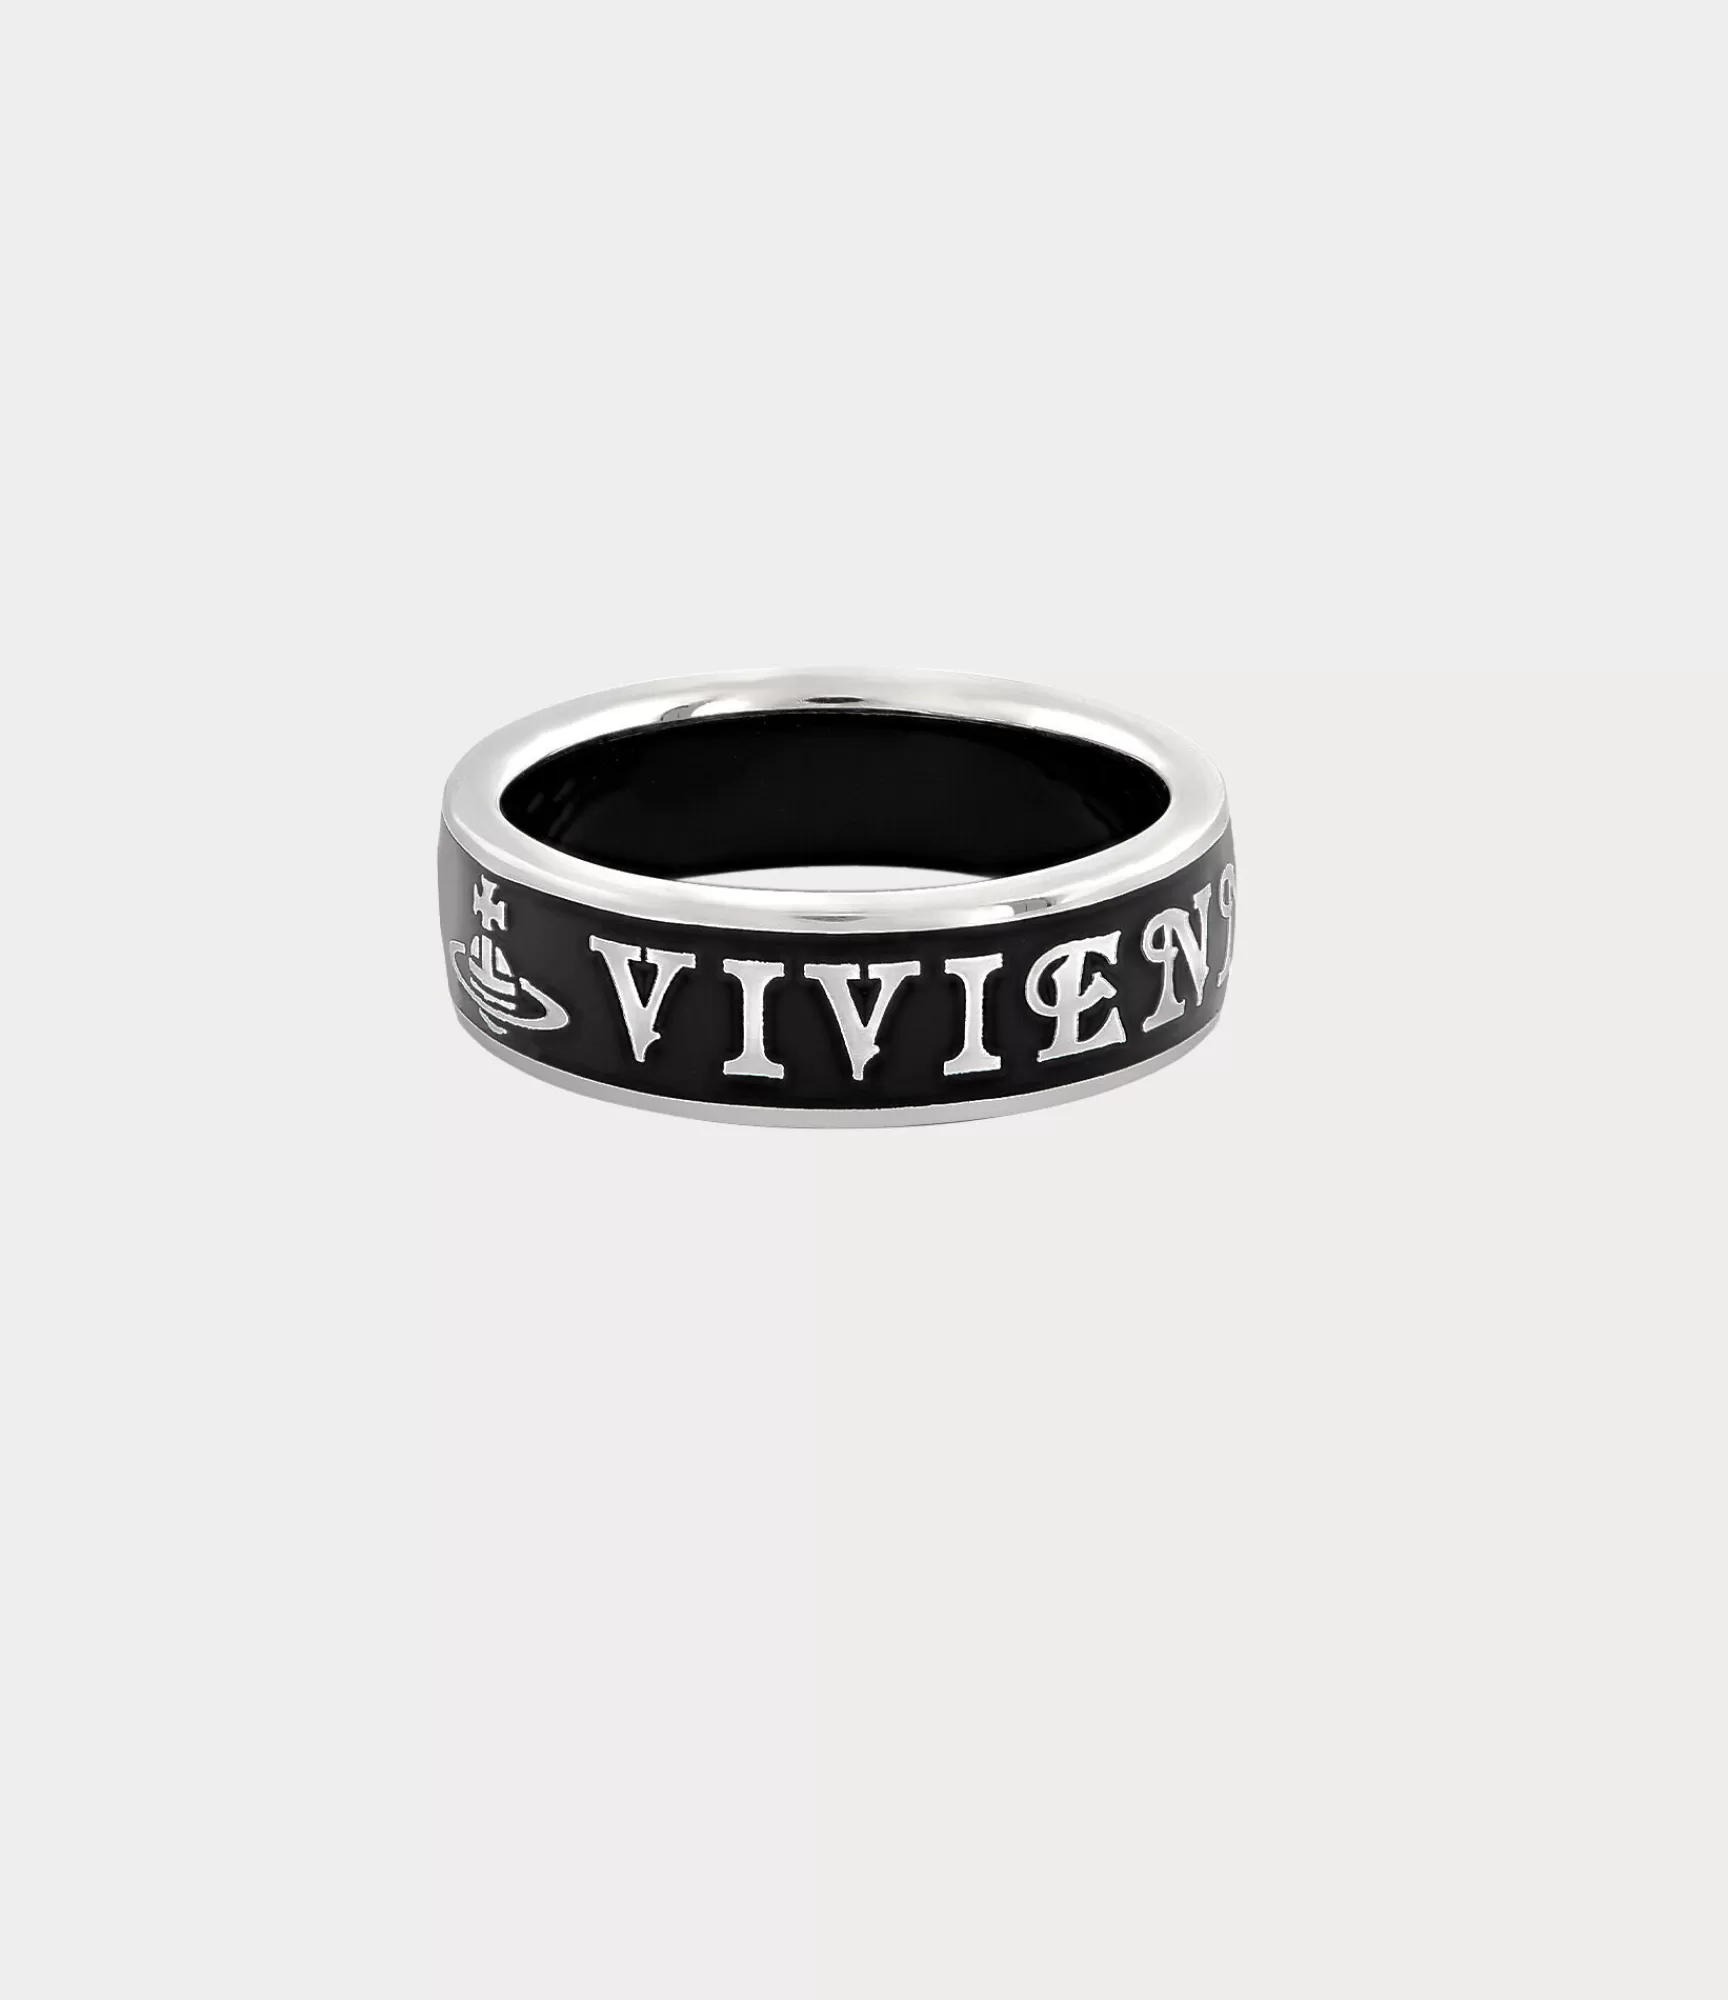 Vivienne Westwood Rings*Conduit street ring Platinum / Black Enamel